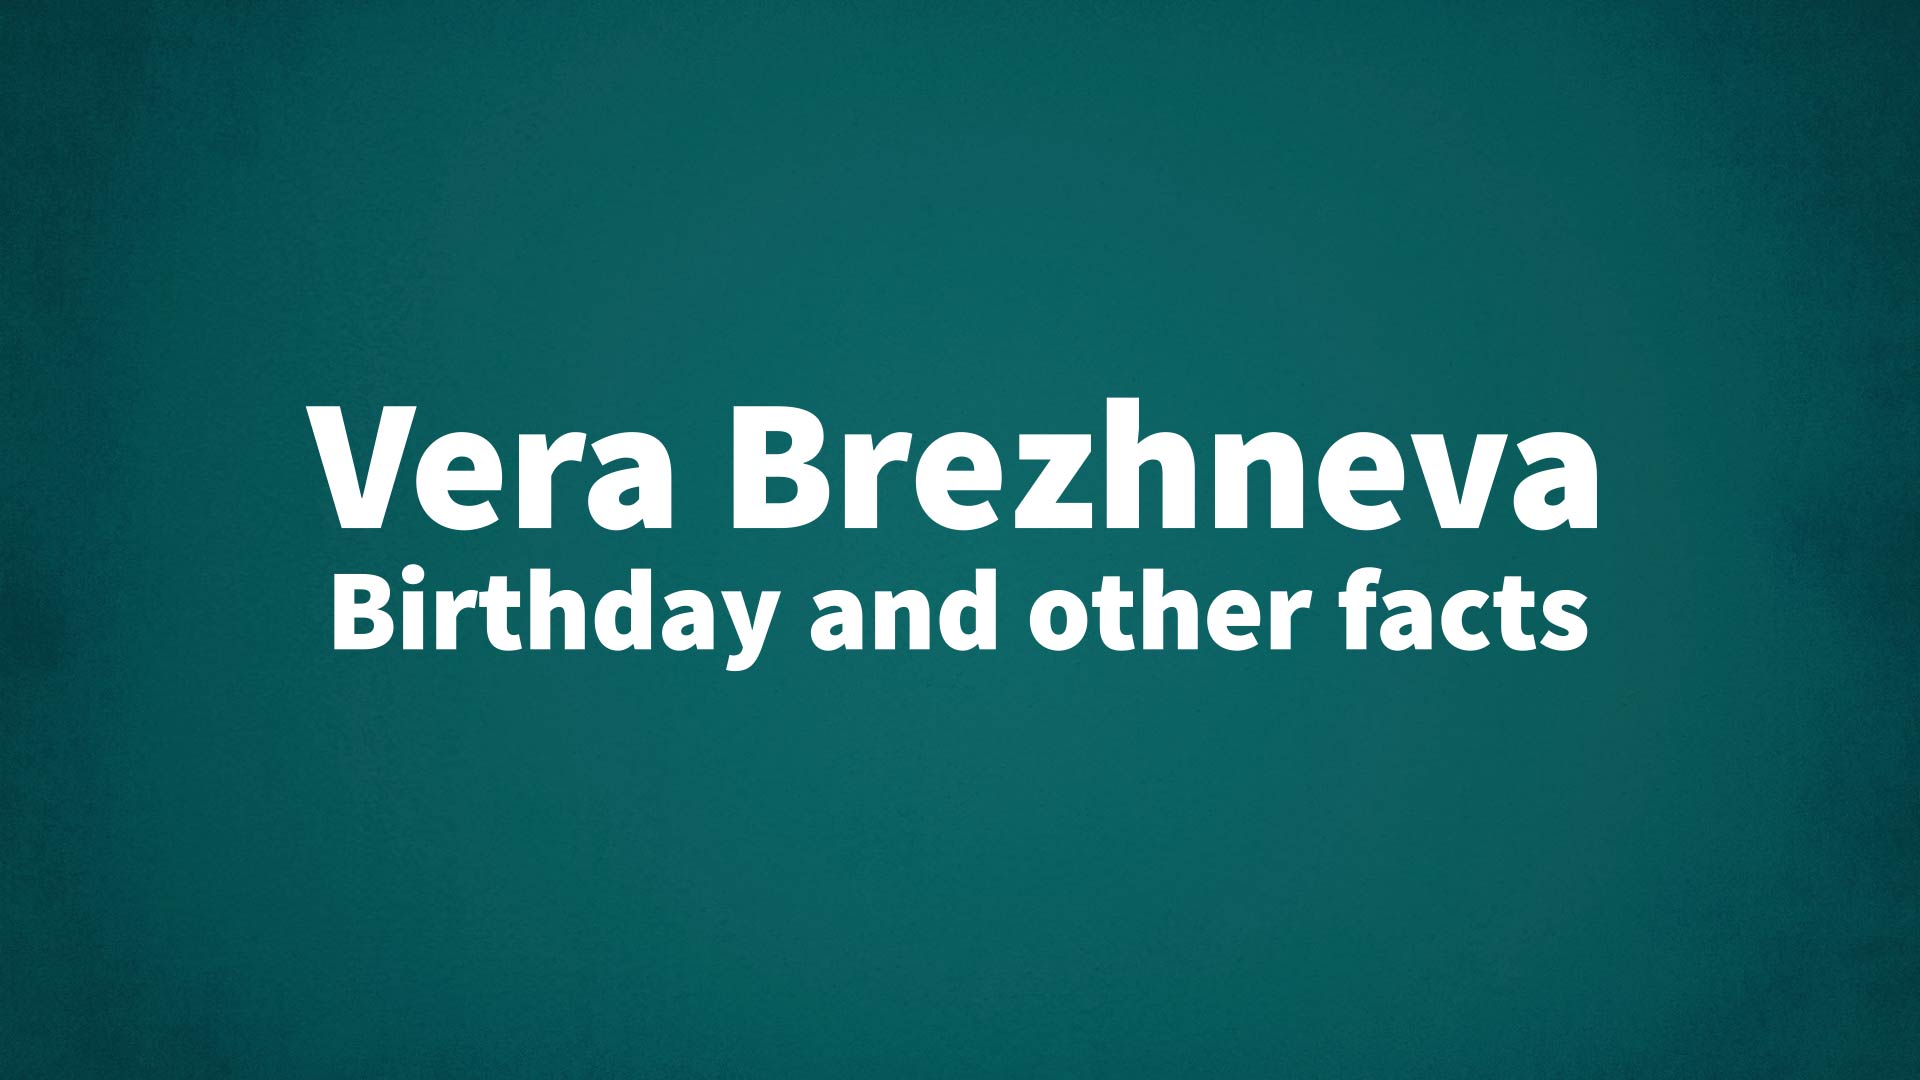 title image for Vera Brezhneva birthday